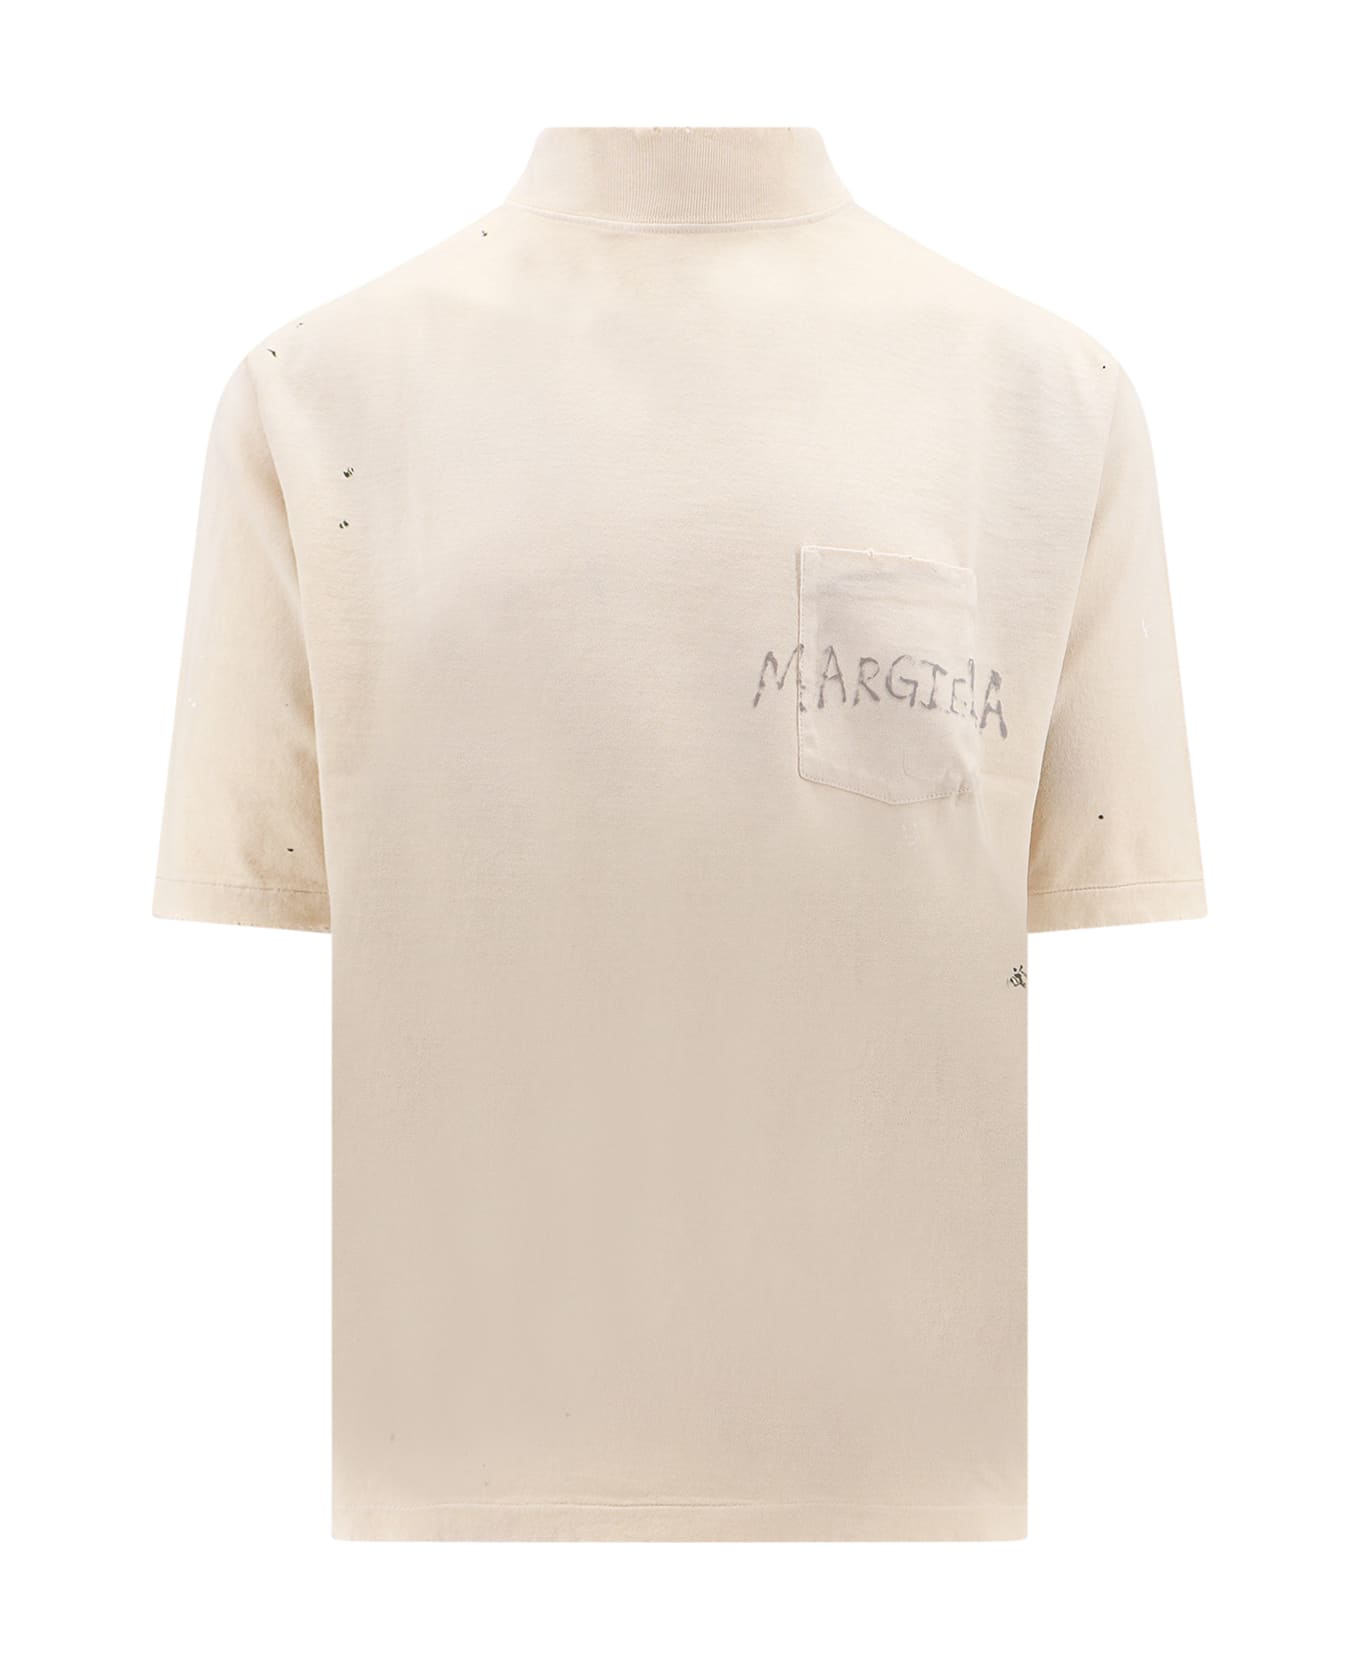 Maison Margiela T-shirt - Ivory